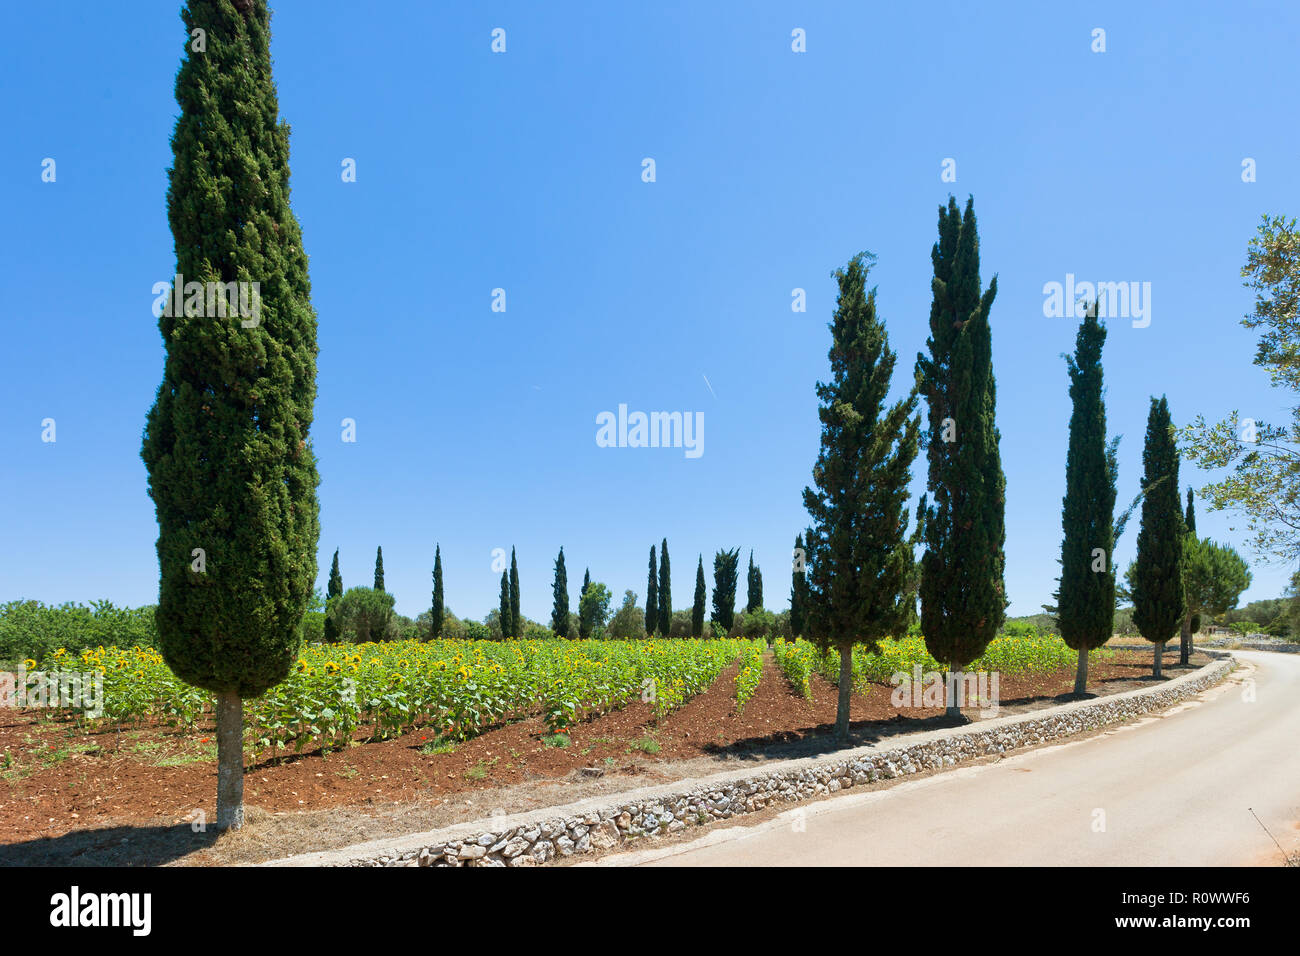 Santa Cesarea Terme, Pouilles, Italie - tournesols sur un champ avant la saison de récolte Banque D'Images